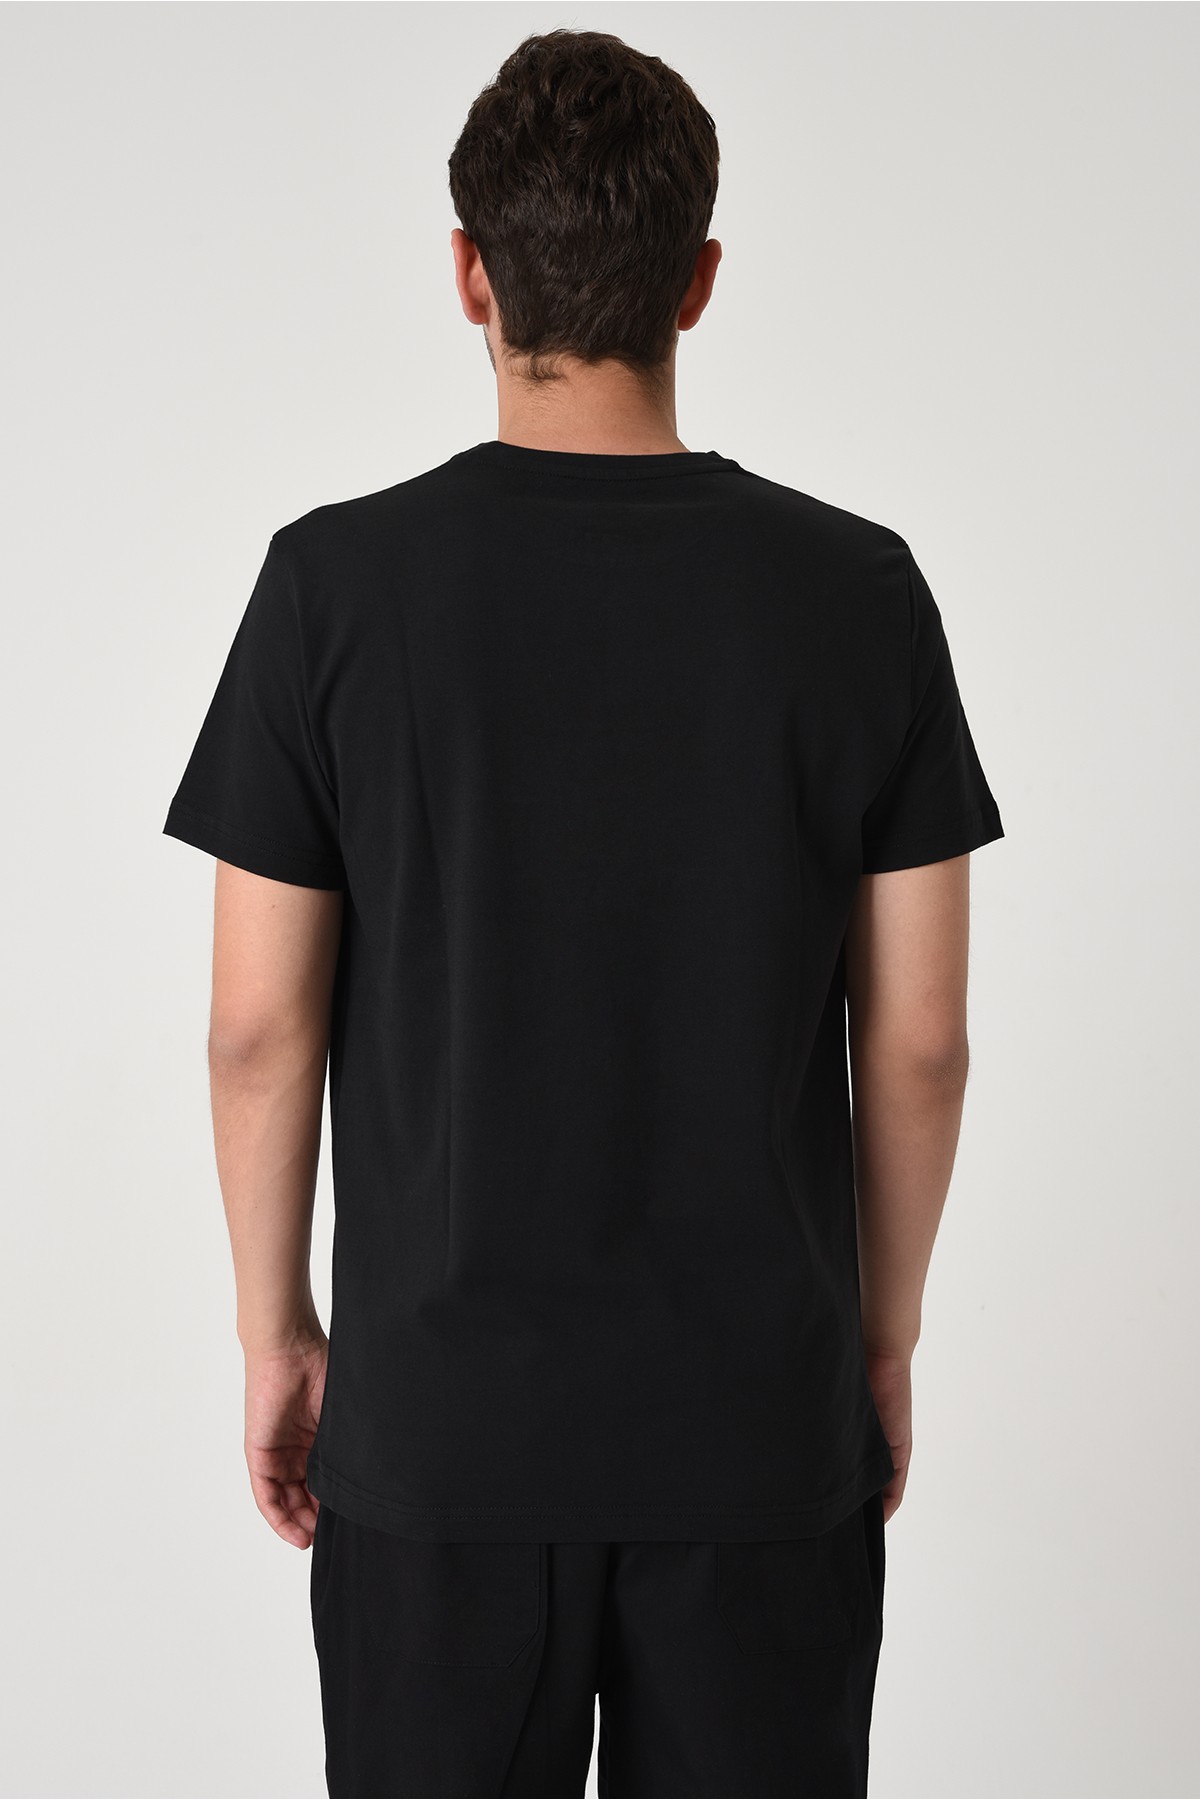 1071 Tasarım Pamuk Bisiklet Yaka Siyah T-shirt 22'